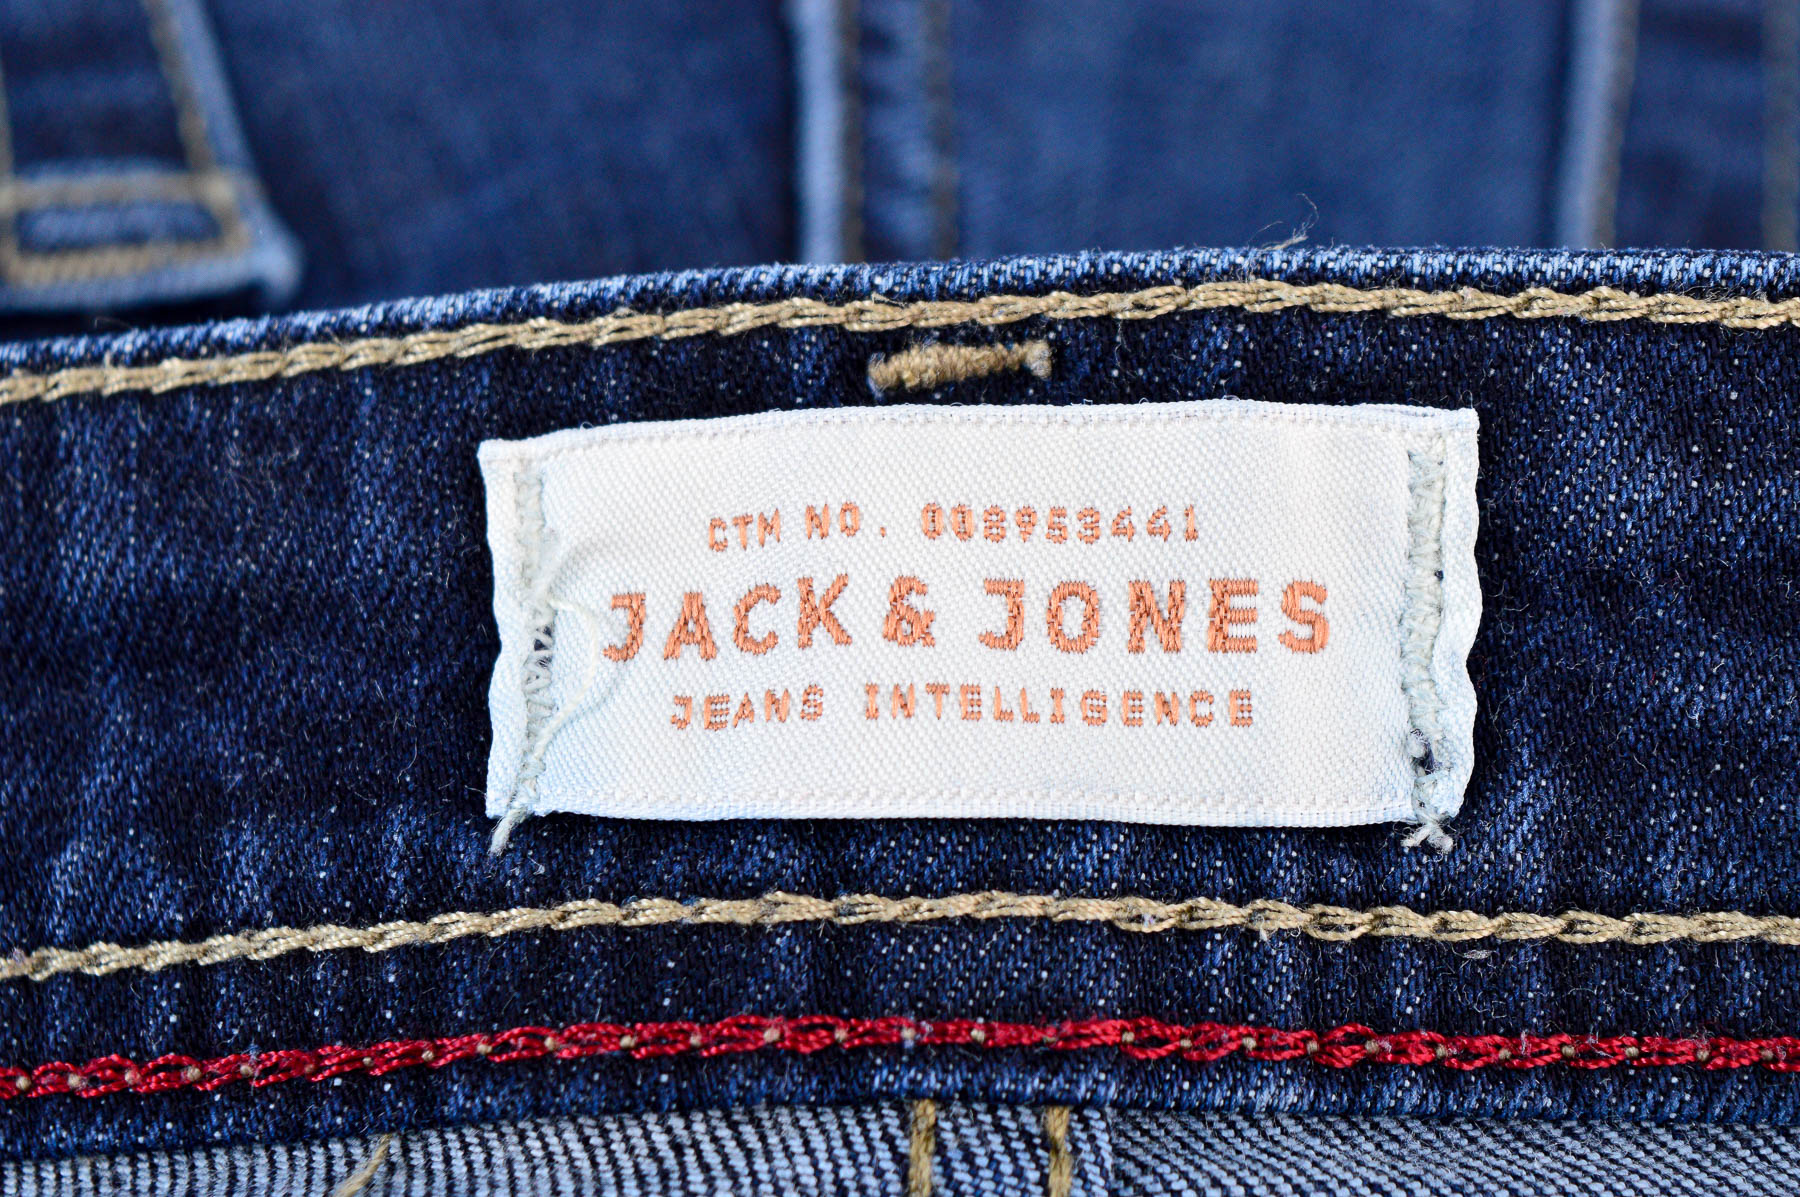 Men's jeans - JACK & JONES - 2